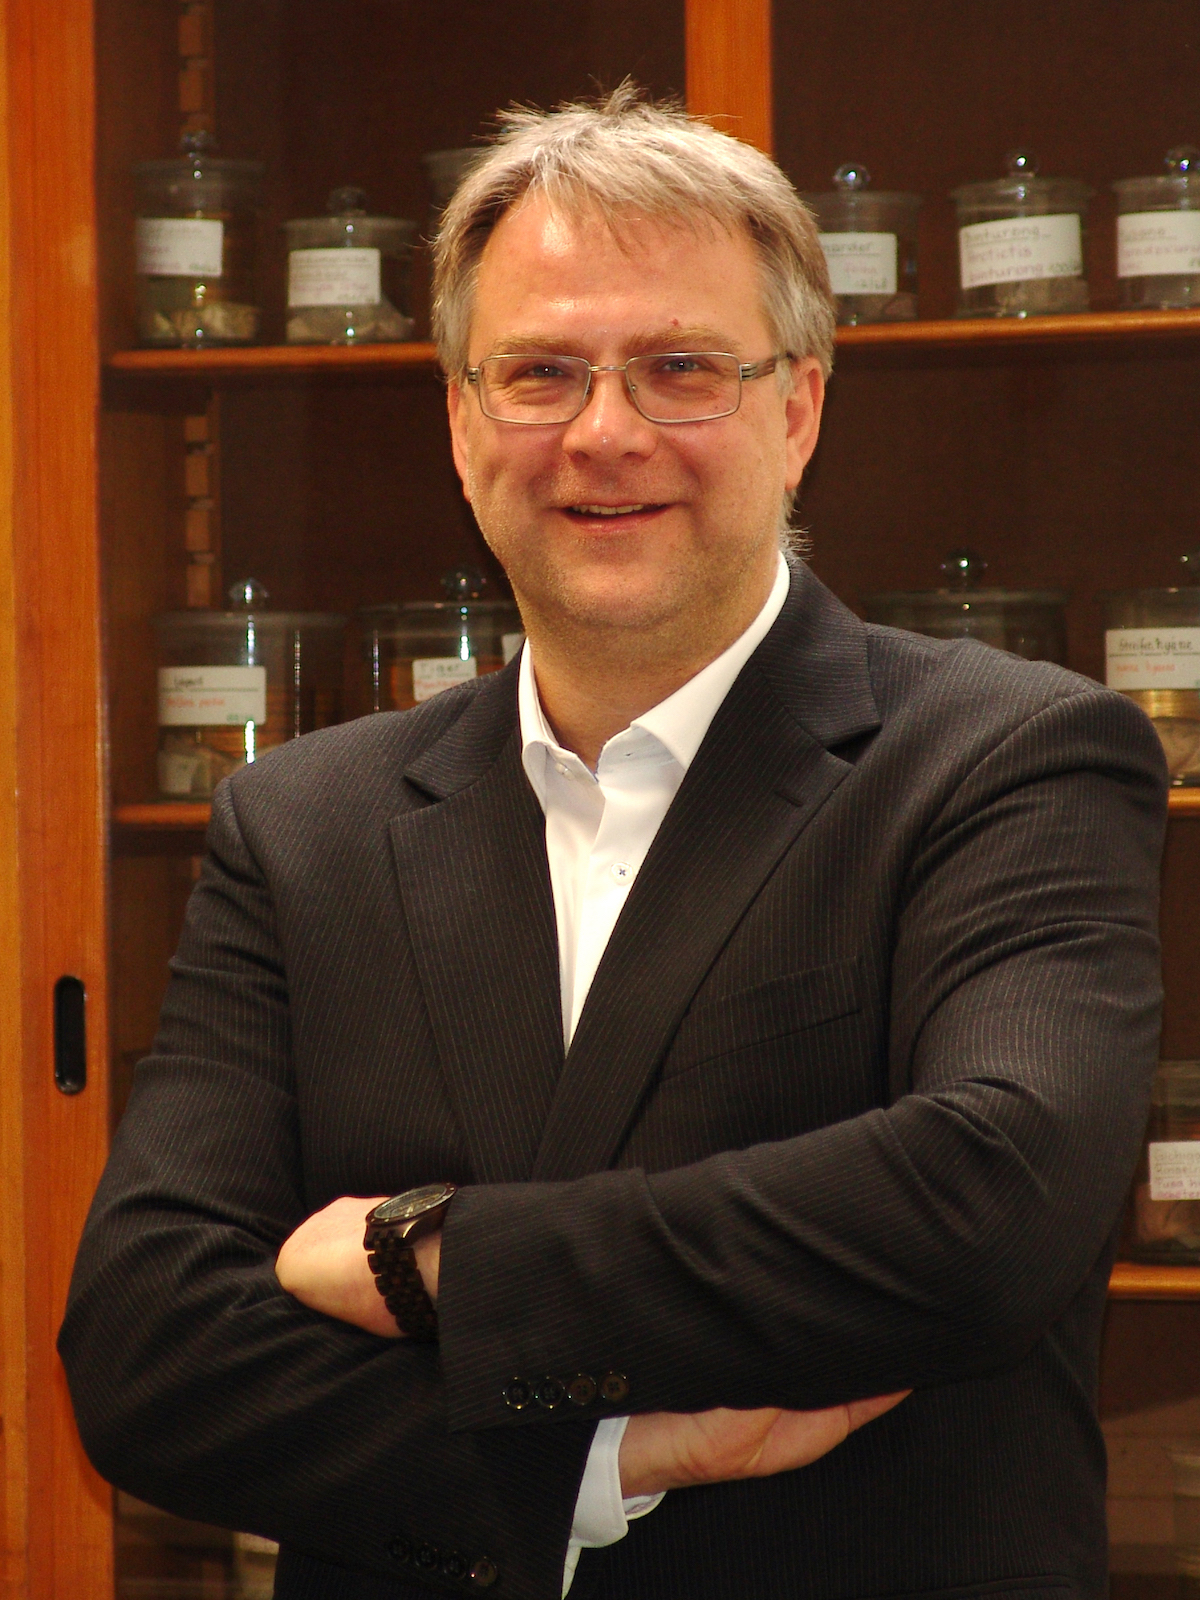 PD Dr. Dr. Markus Morawski, Forschungsgruppenleiter am Paul Flechsig-Institut für Hirnforschung der Universität Leipzig (©Jens Stieler)